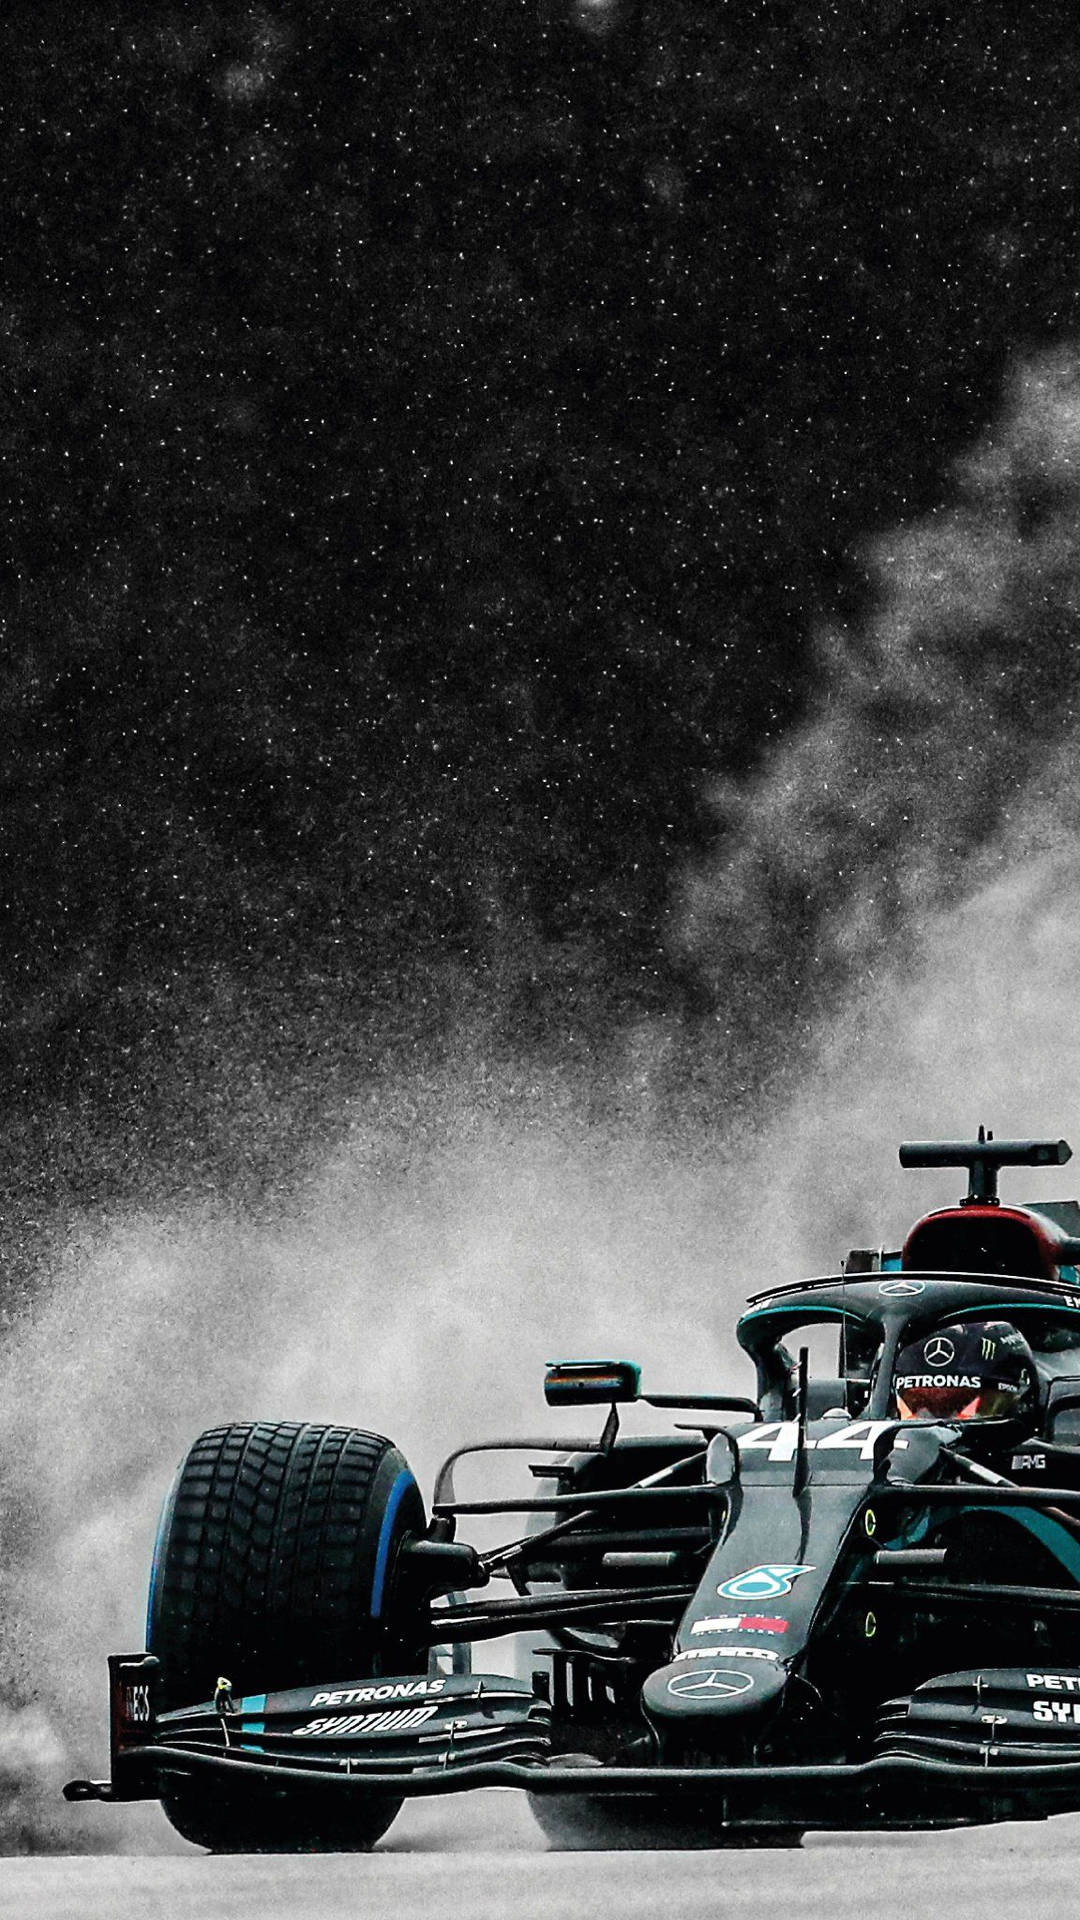 F1 Amg Petronas Against Smoke Iphone Background